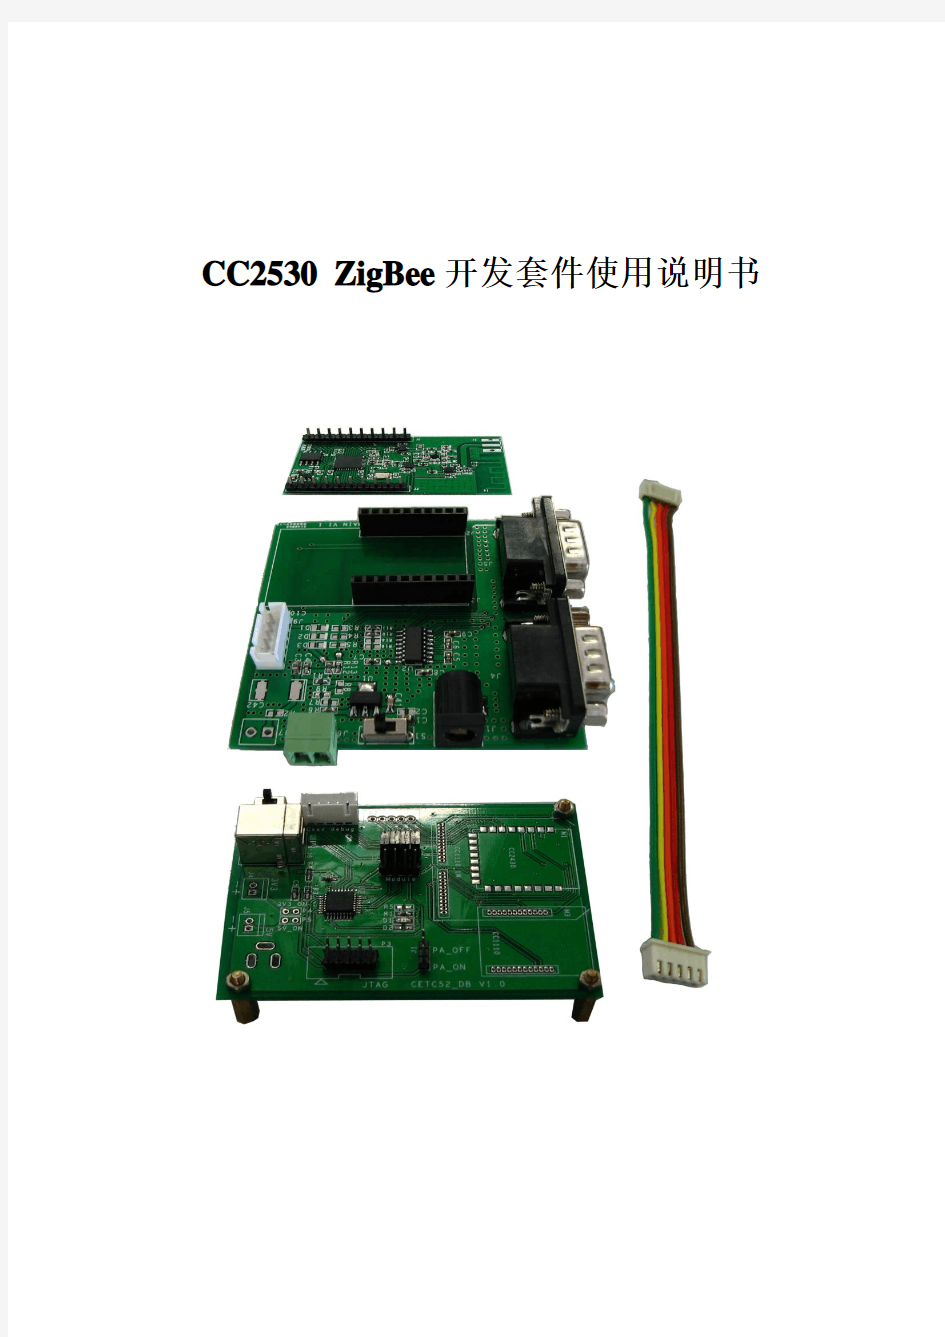 CC2530_ZigBee开发套件使用说明书